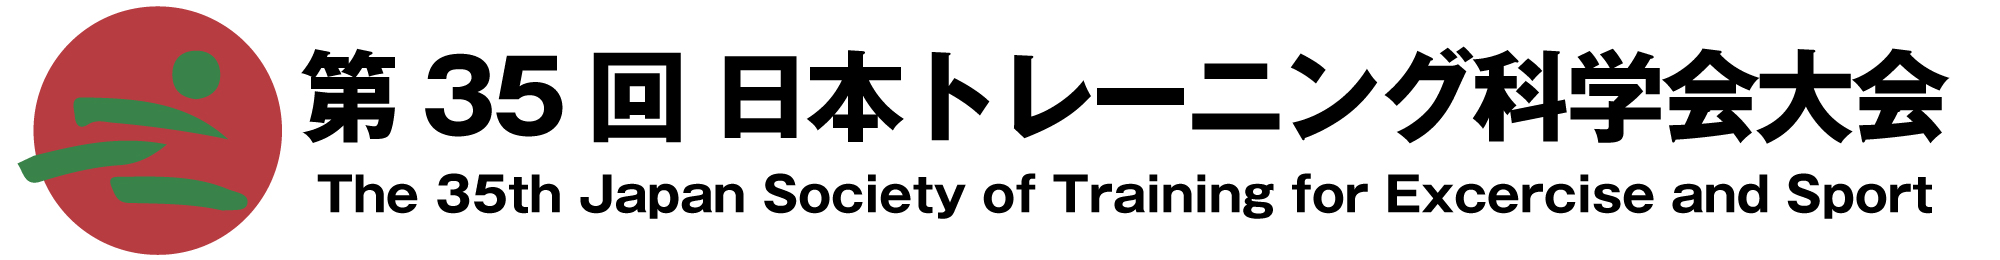 第35回 日本トレーニング科学会大会